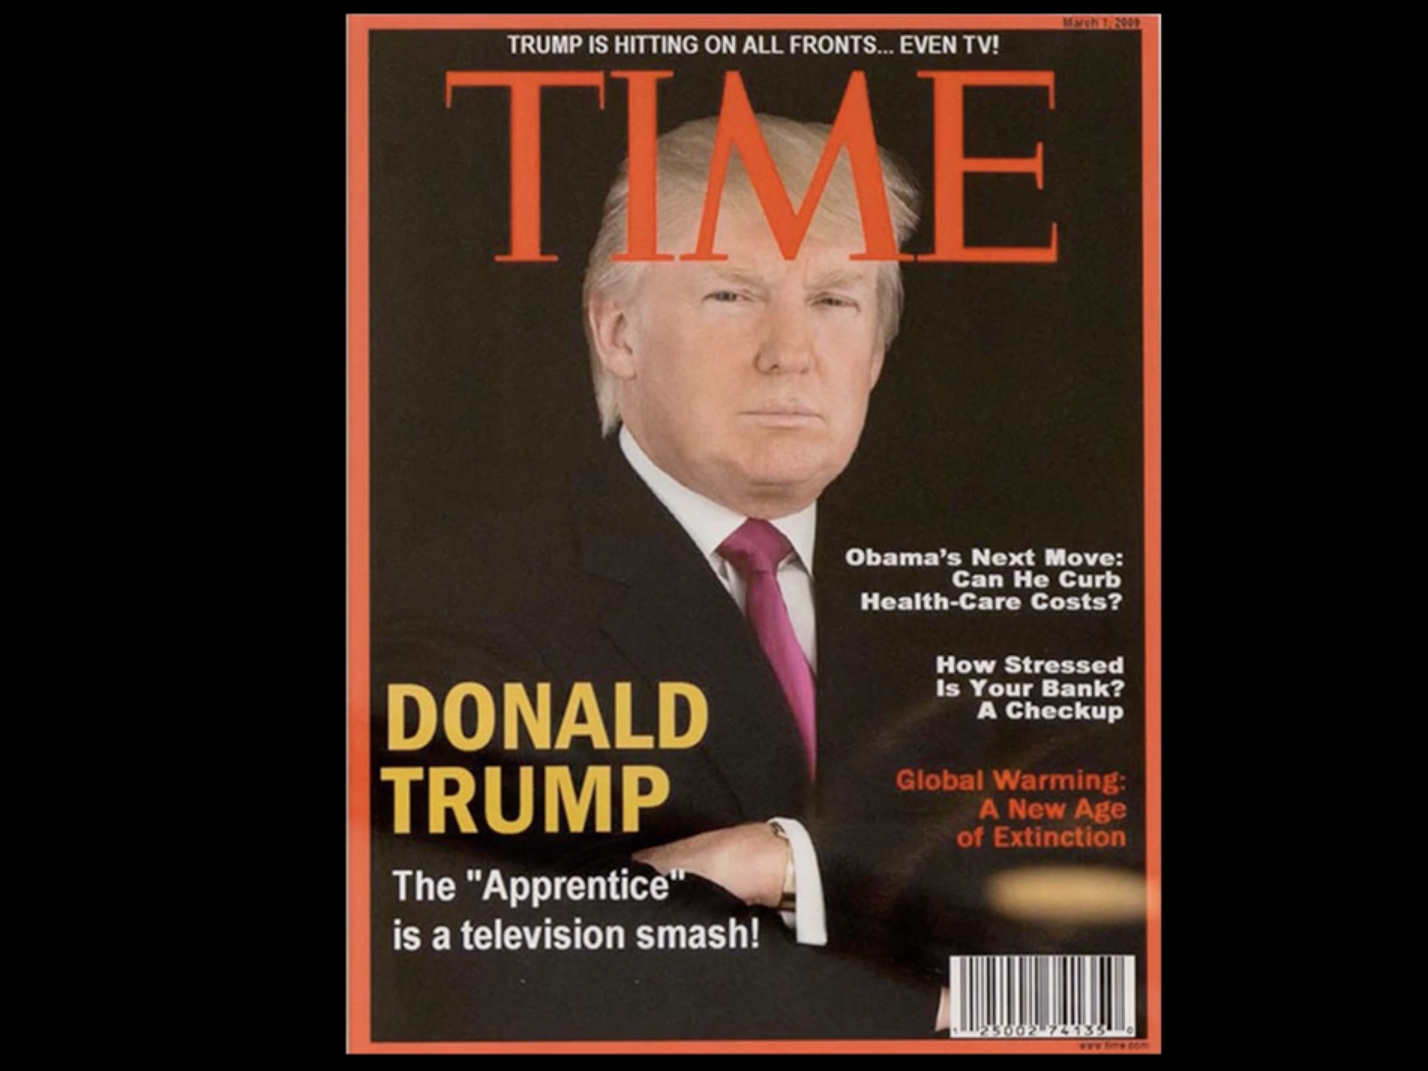 A Time magazin kéri Trumpékat, hogy ne terjesszék a kamu Time-címlapot, amin Trump van